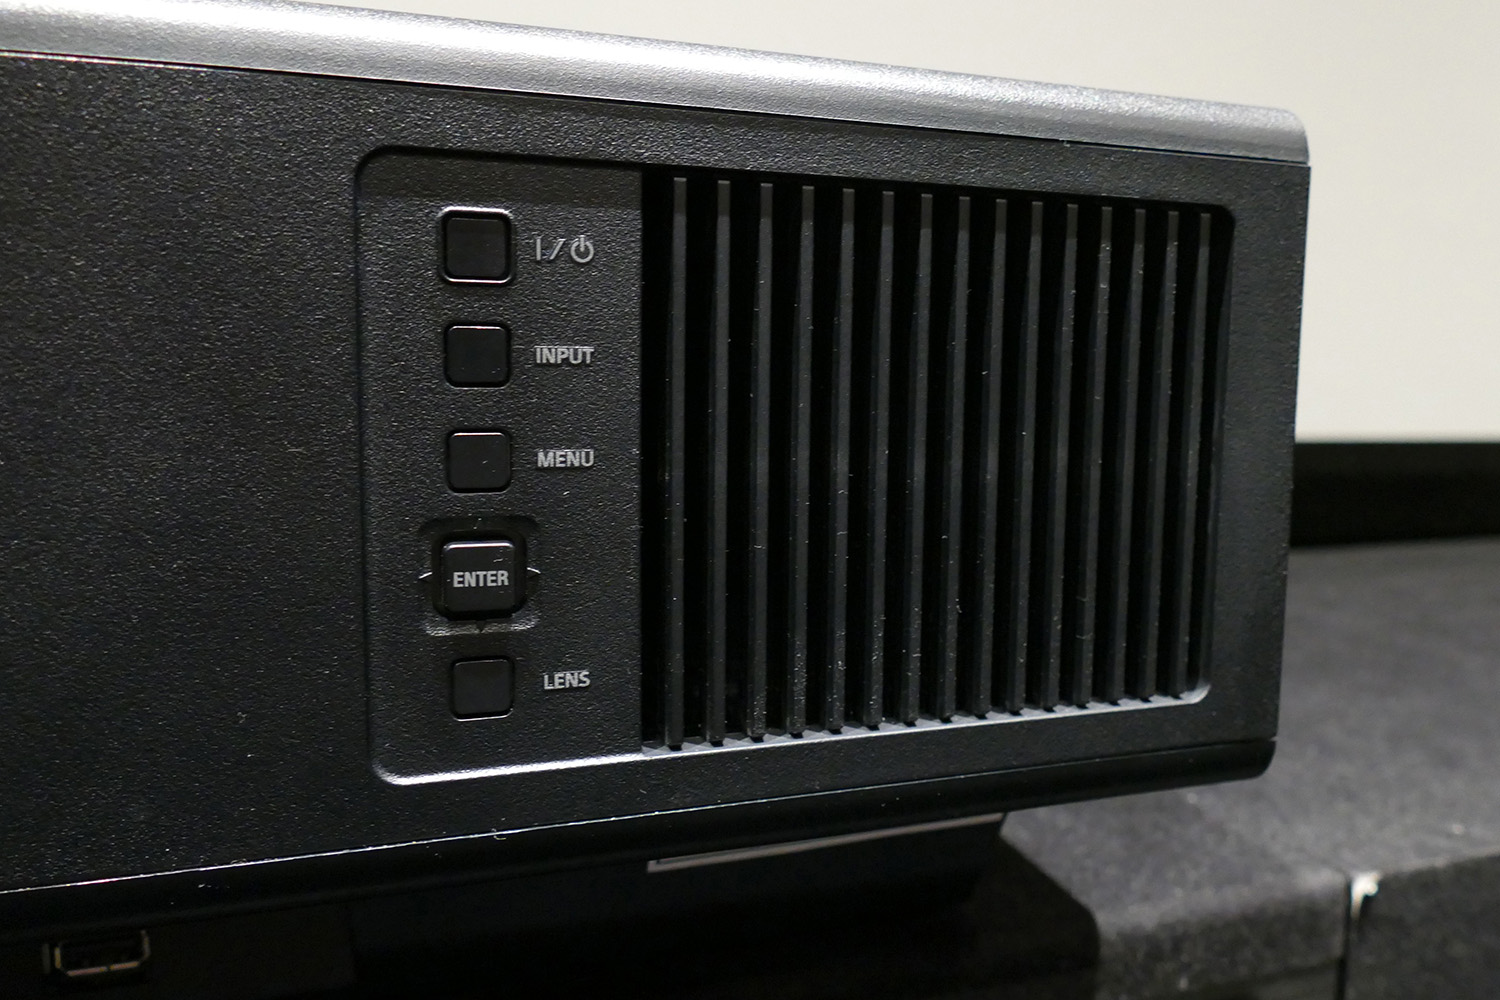 Test Sony VPL-XW5000 : le plus abordable des vidéoprojecteurs Sony 4K Ultra  HD passe au laser - Les Numériques